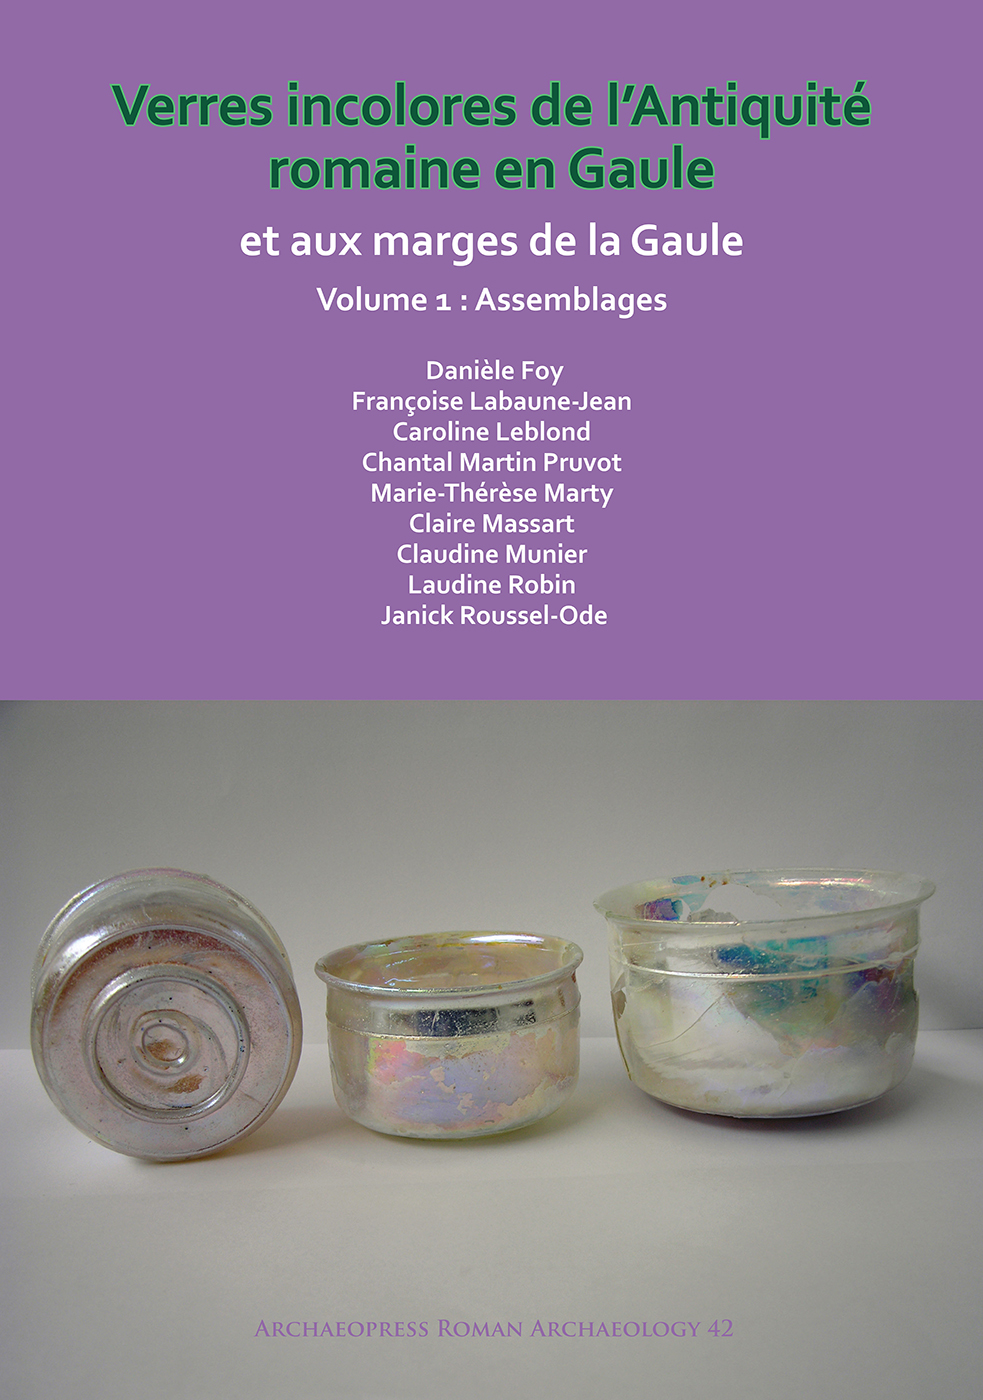 Verres incolores de l'antiquité romaine en Gaule et aux marges de la Gaule, 2018, 2 volumes.